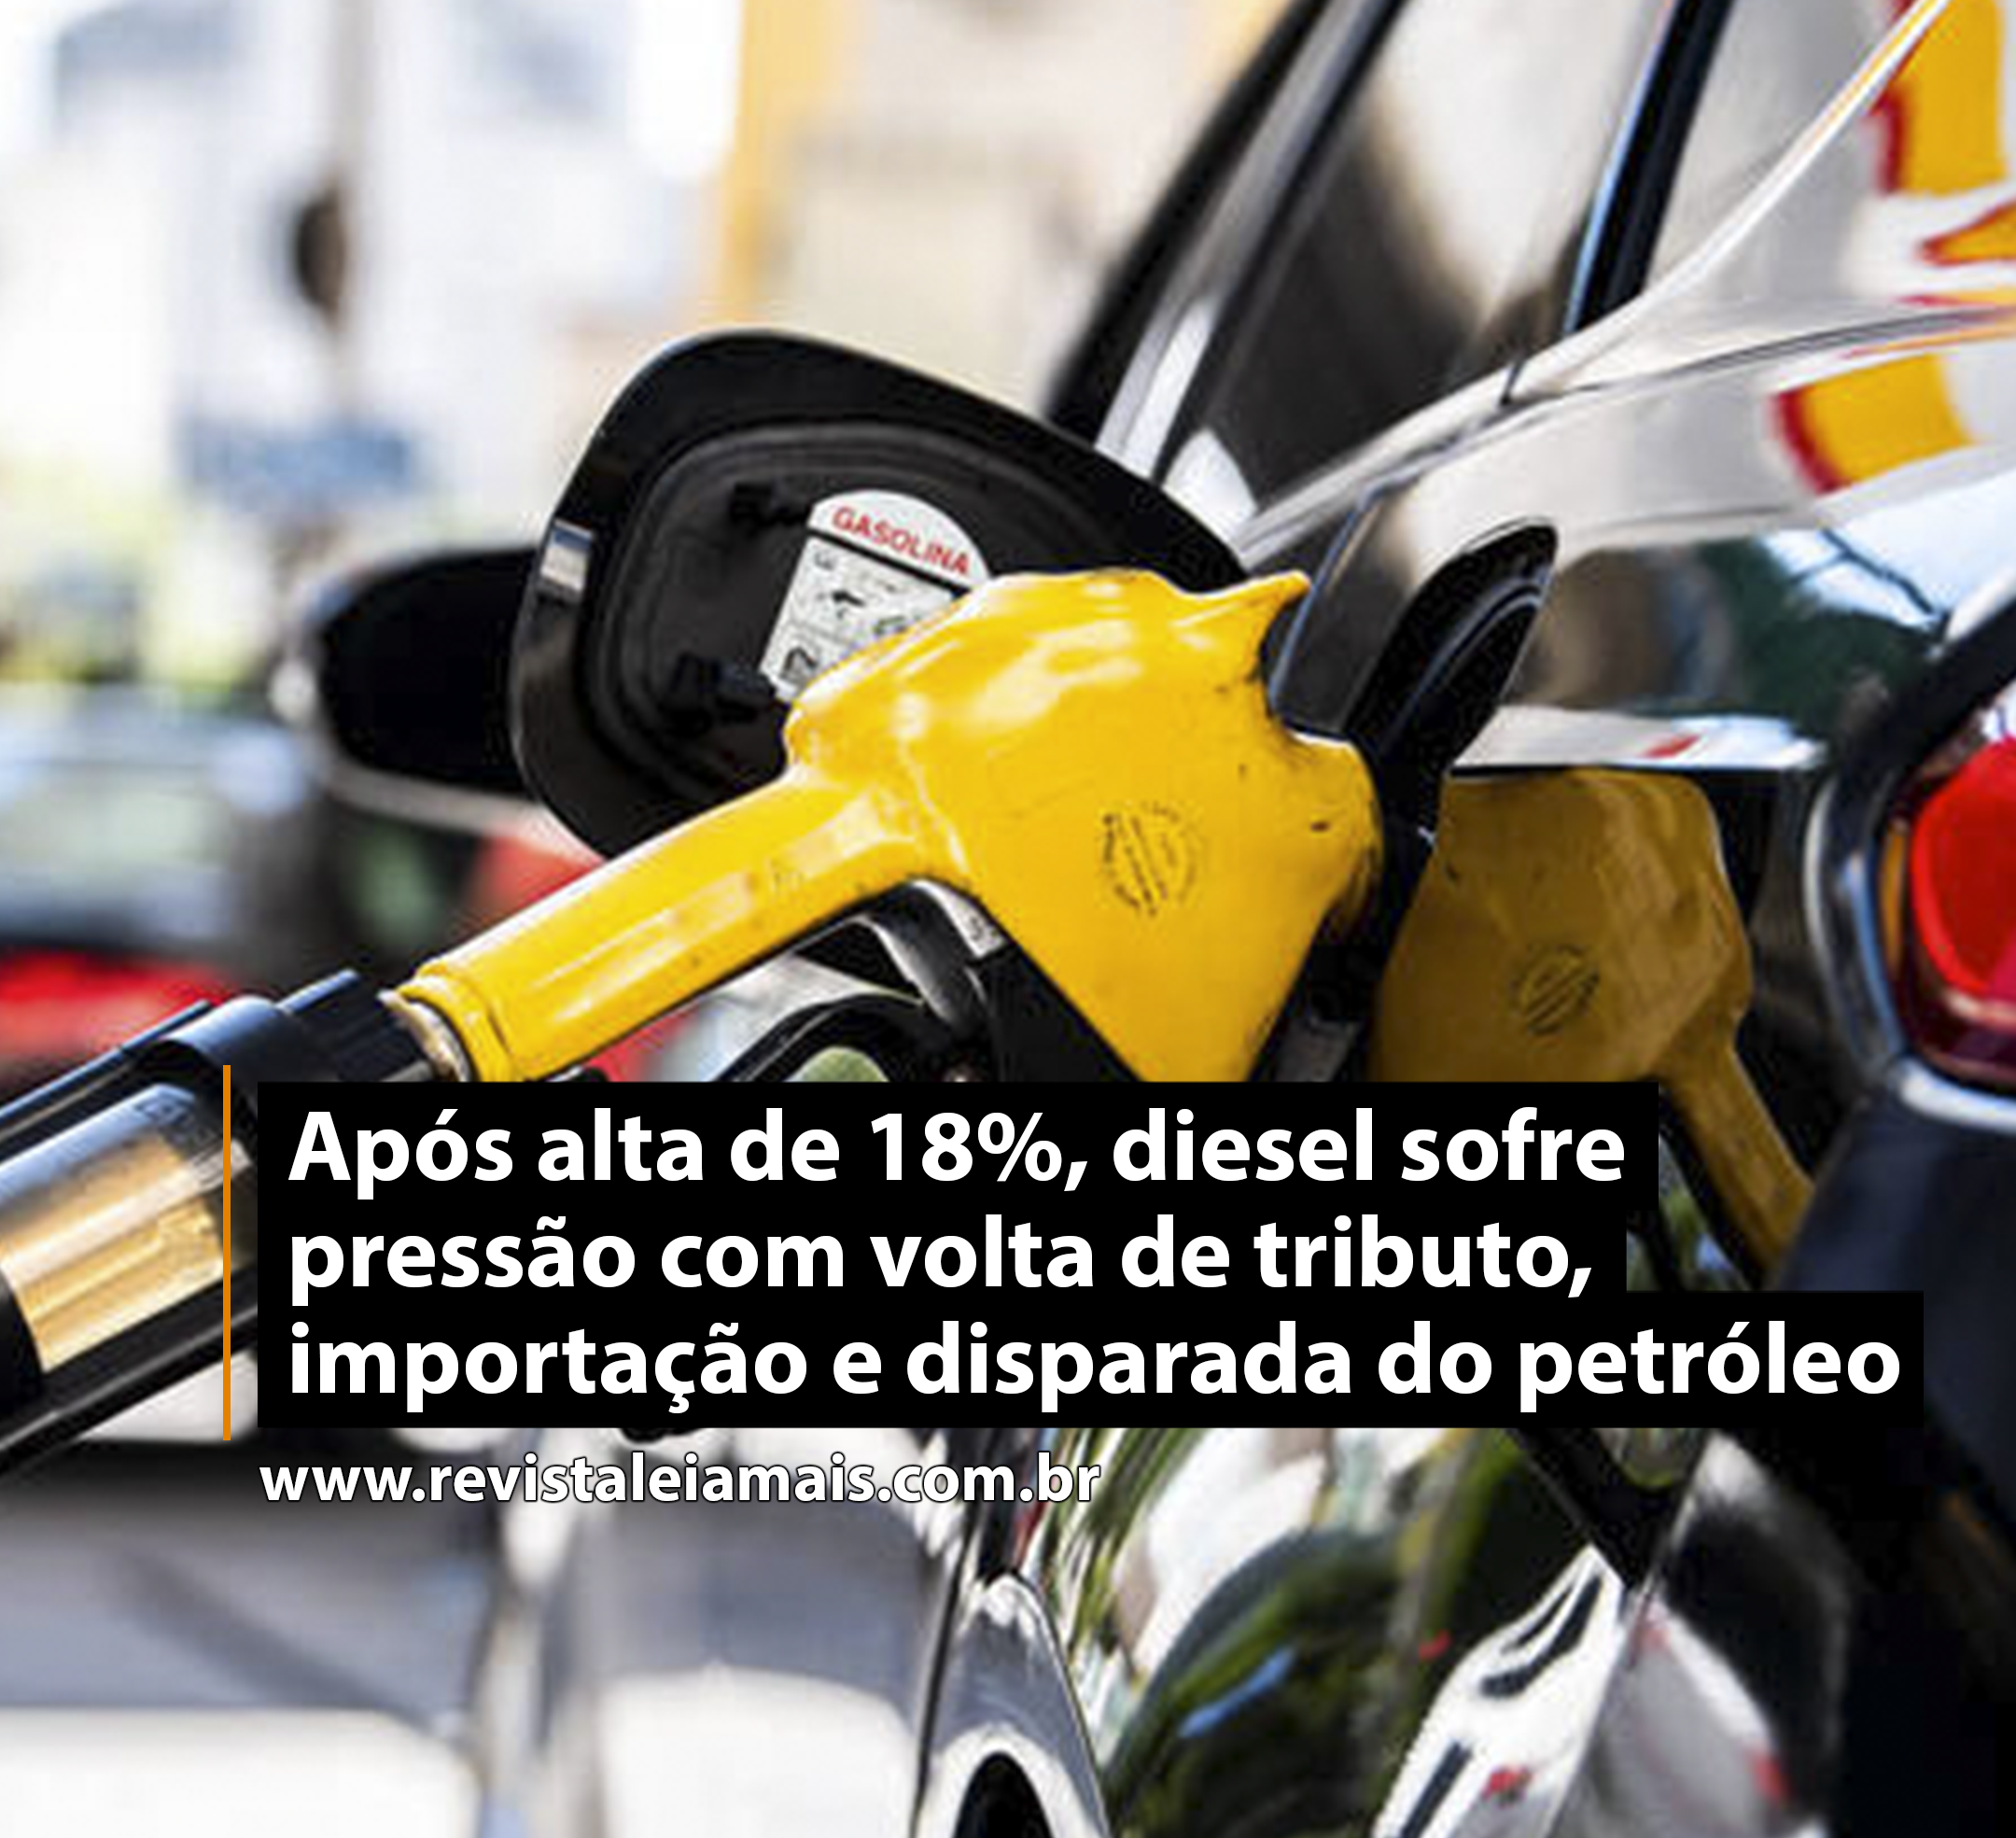 Após alta de 18%, diesel sofre pressão com volta de tributo, importação e disparada do petróleo